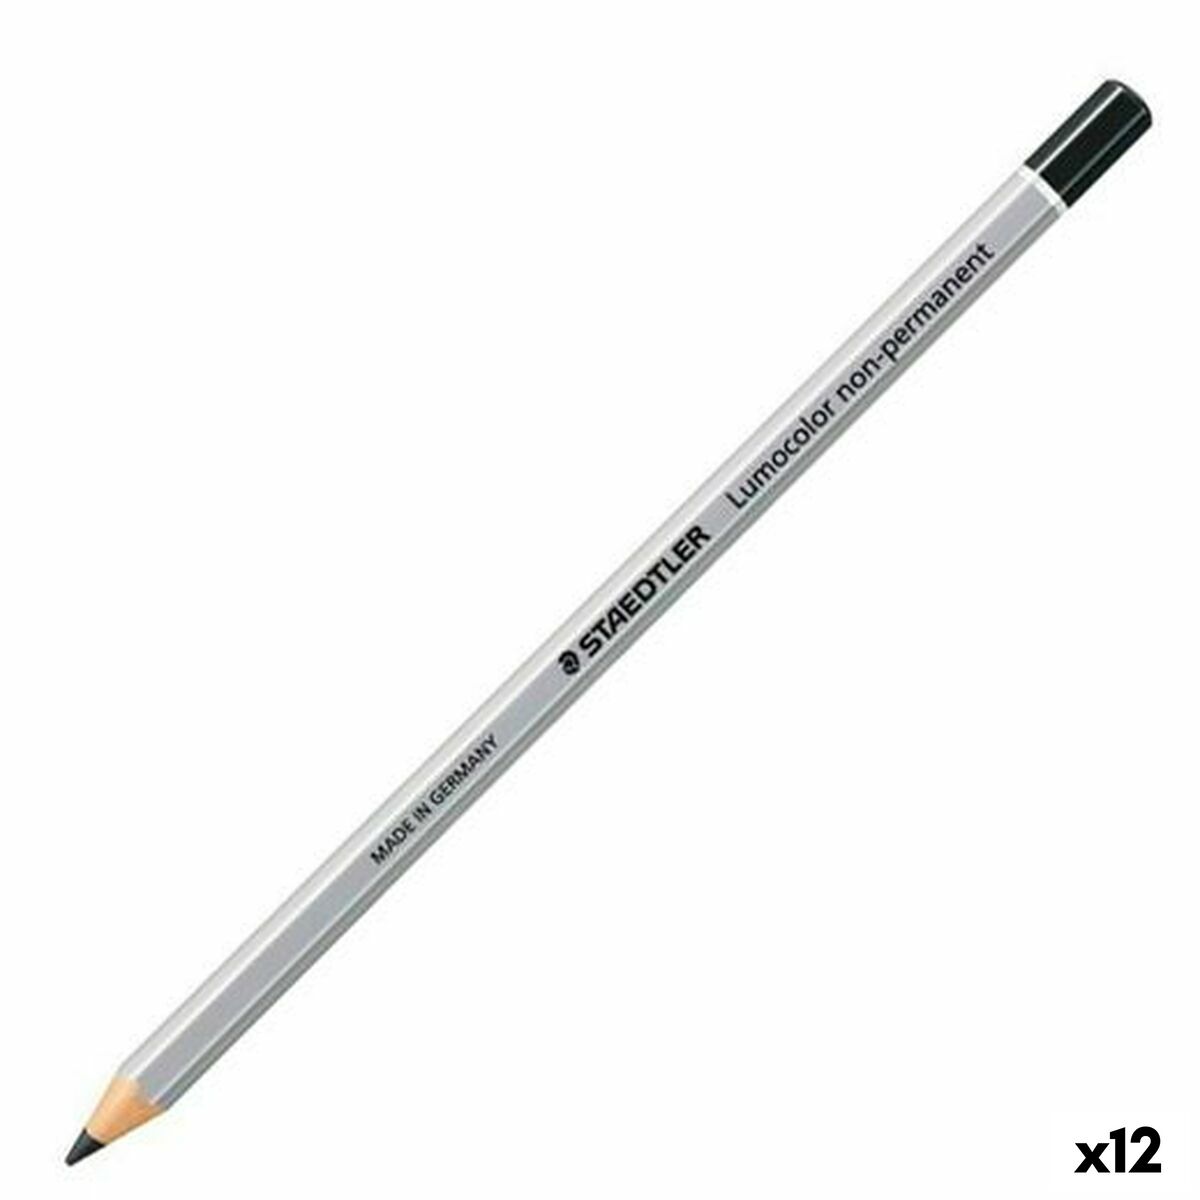 Crayon marqueur Staedtler Non-Permanent Noir (12 Unités)